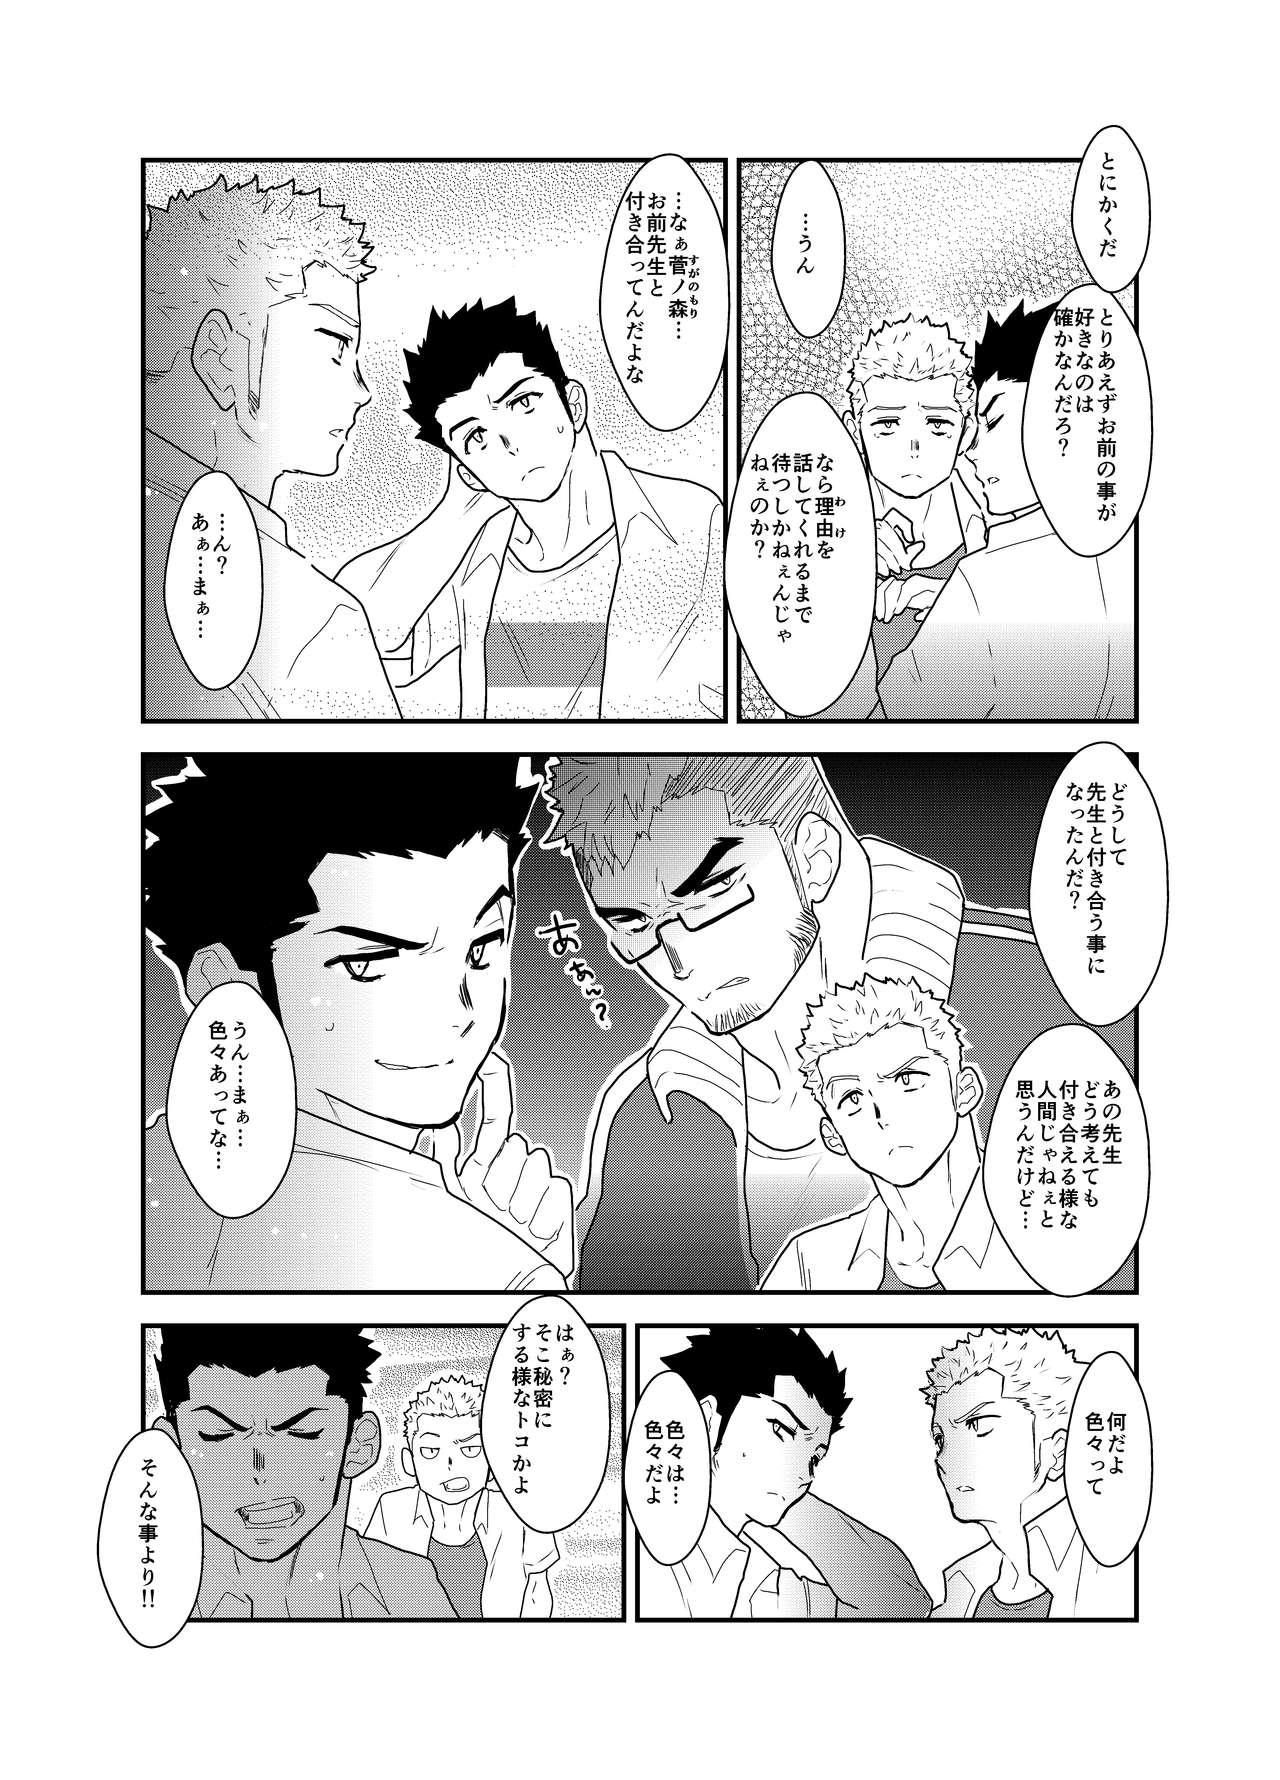 Casa Aitsu ga Ore to Tsukiaenai Riyuu ga Mattaku Wakaranai no desu ga. - Original Wam - Page 6